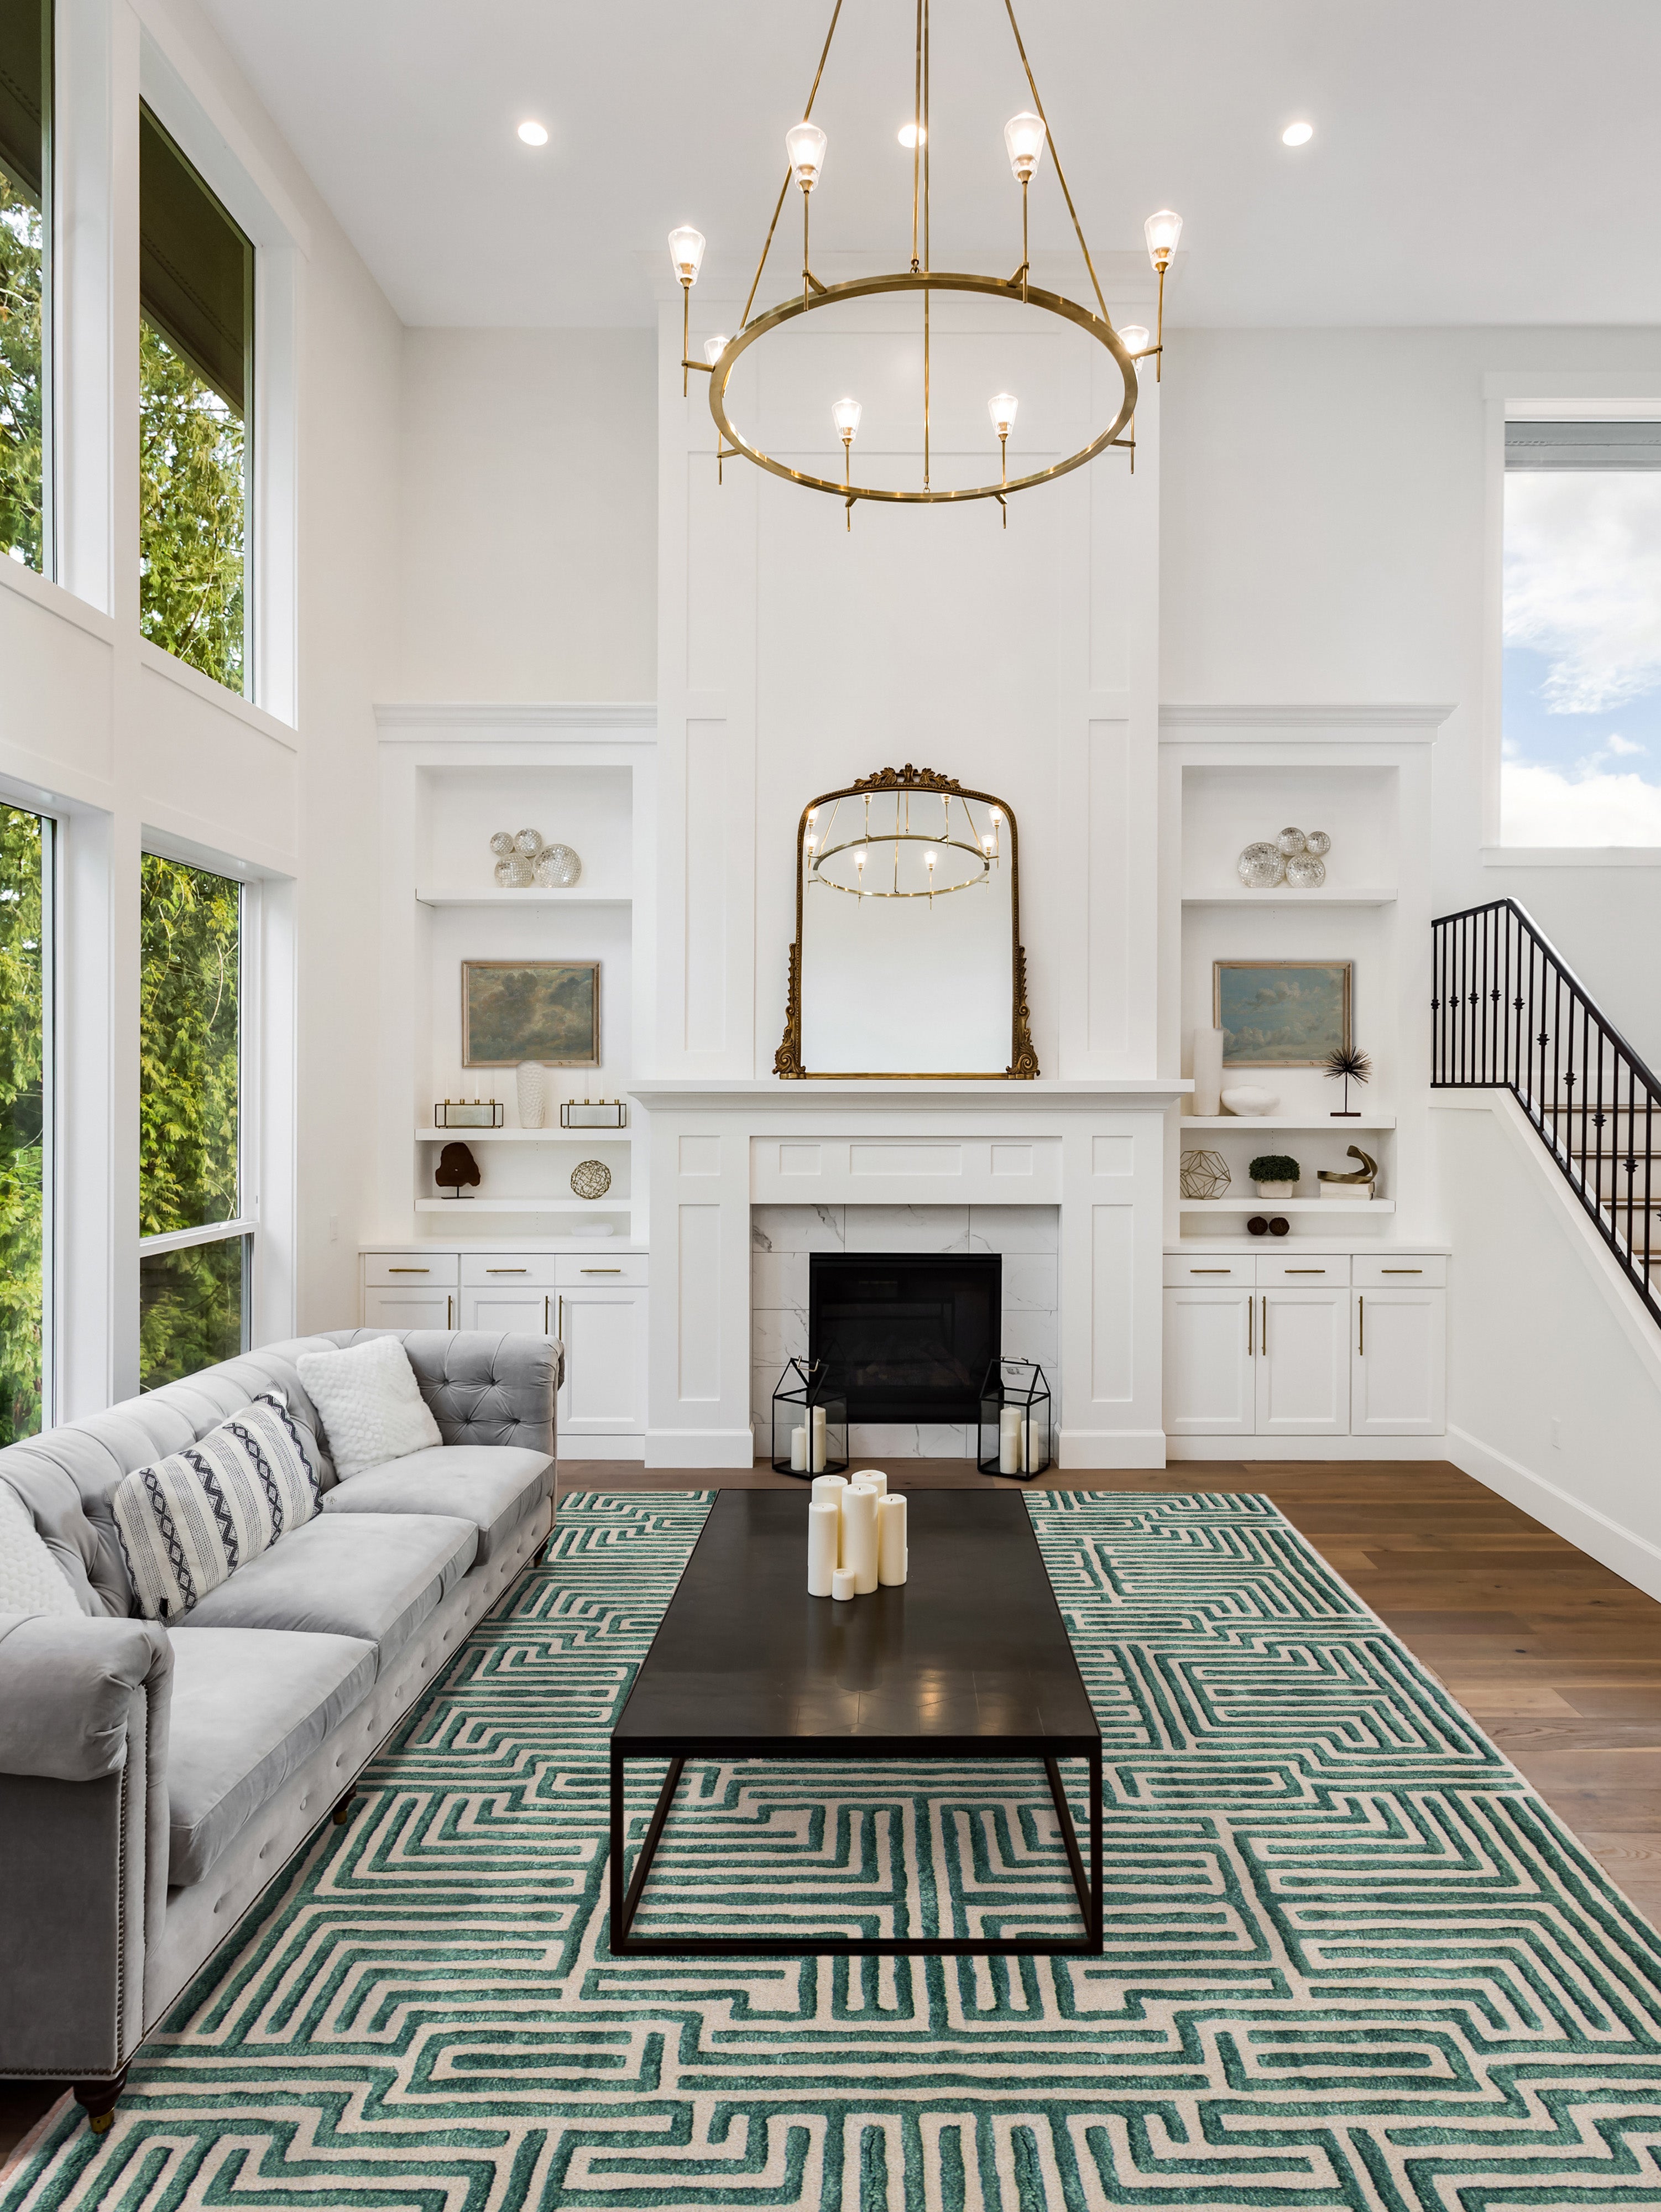 Knossos Hand-Tufted Maze Rug by Kevin Francis Design | Atlanta Interior Designer | Luxury Home Decor